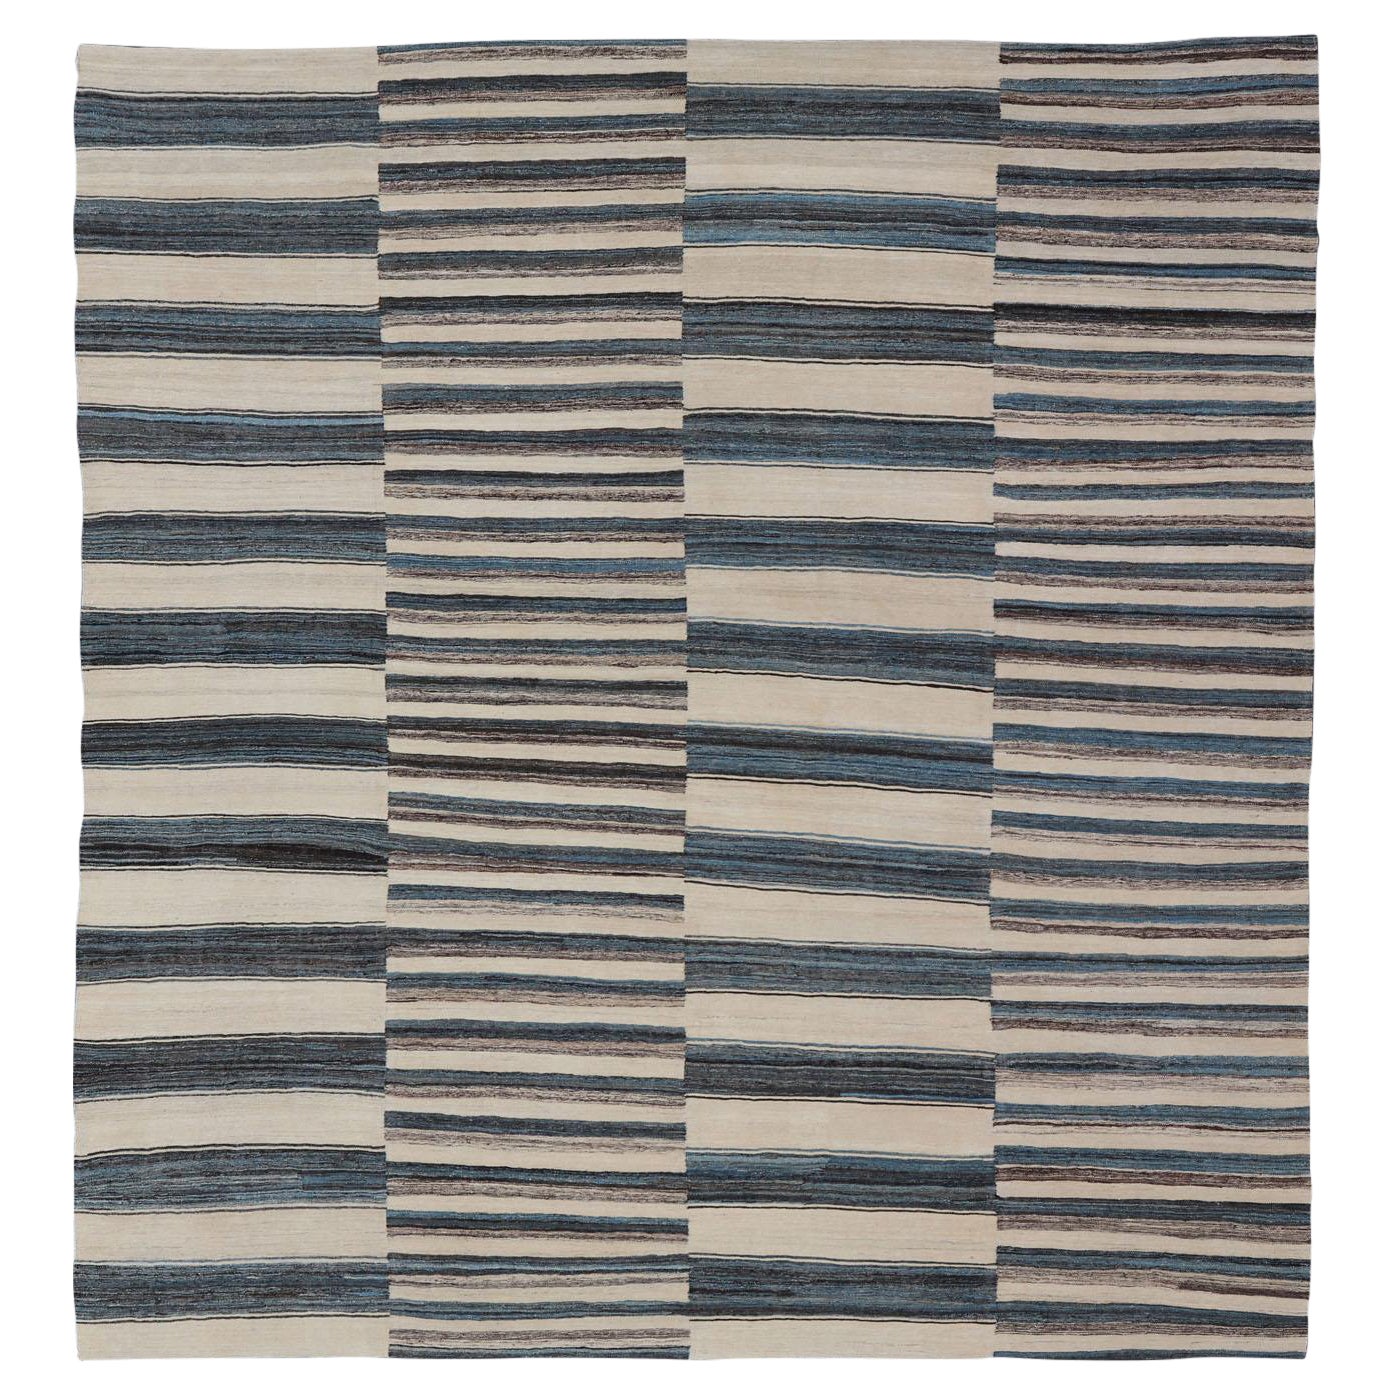 Sqaure Flachgewebter Kelim-Teppich mit klassischem Streifenmuster in Blau, Creme, Braun